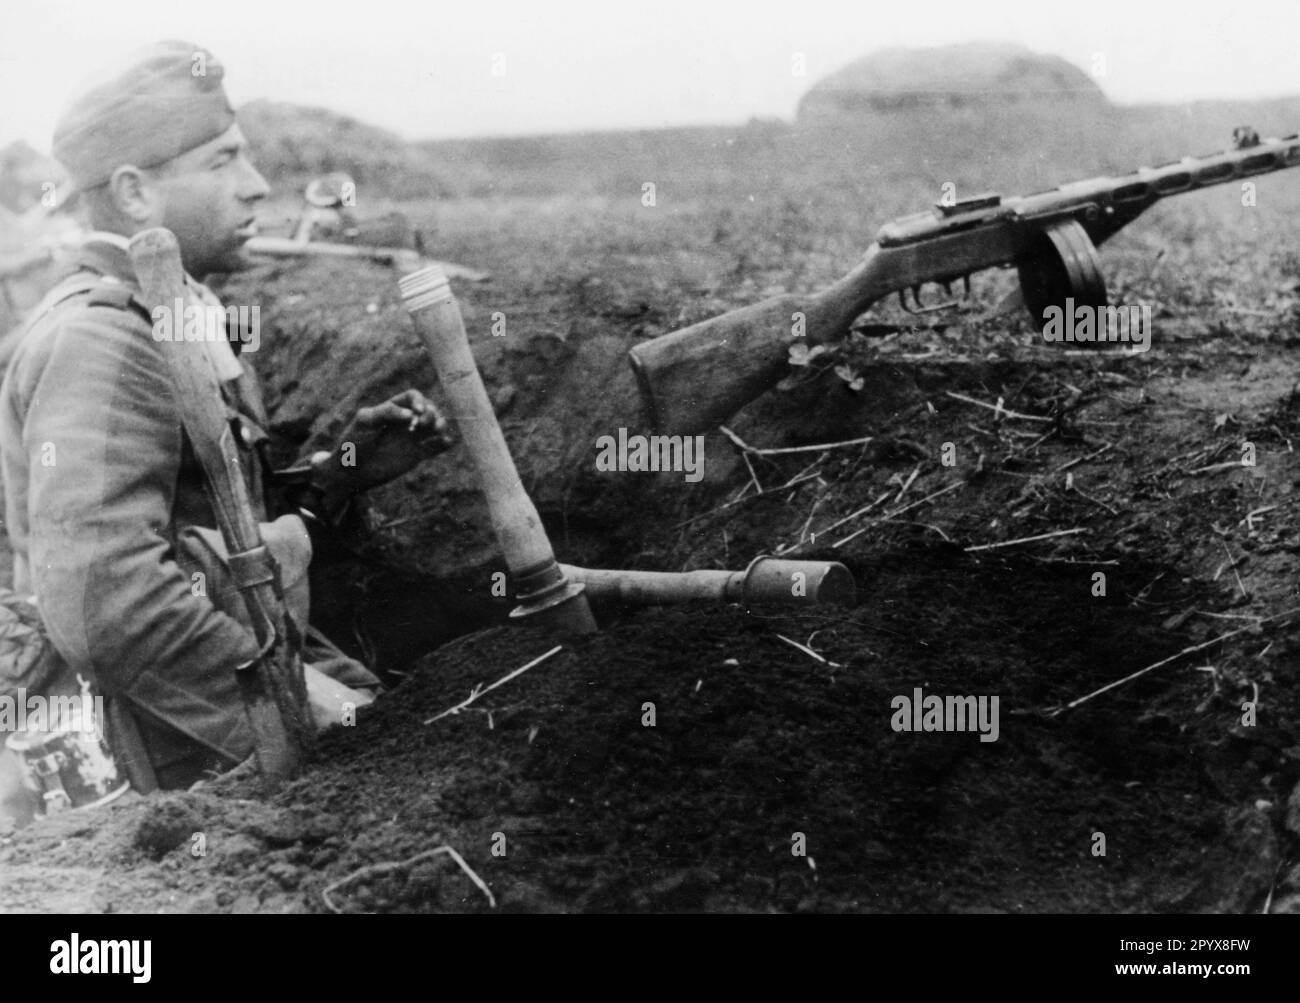 Un fantassin allemand en position près de Poltava, dans la partie sud du front oriental. Sur la pente de la tranchée en face de lui se trouve une arme russe pillée, un canon de sous-machine PPSch-41 (Schpadin). Photo: Rebhan. [traduction automatique] Banque D'Images